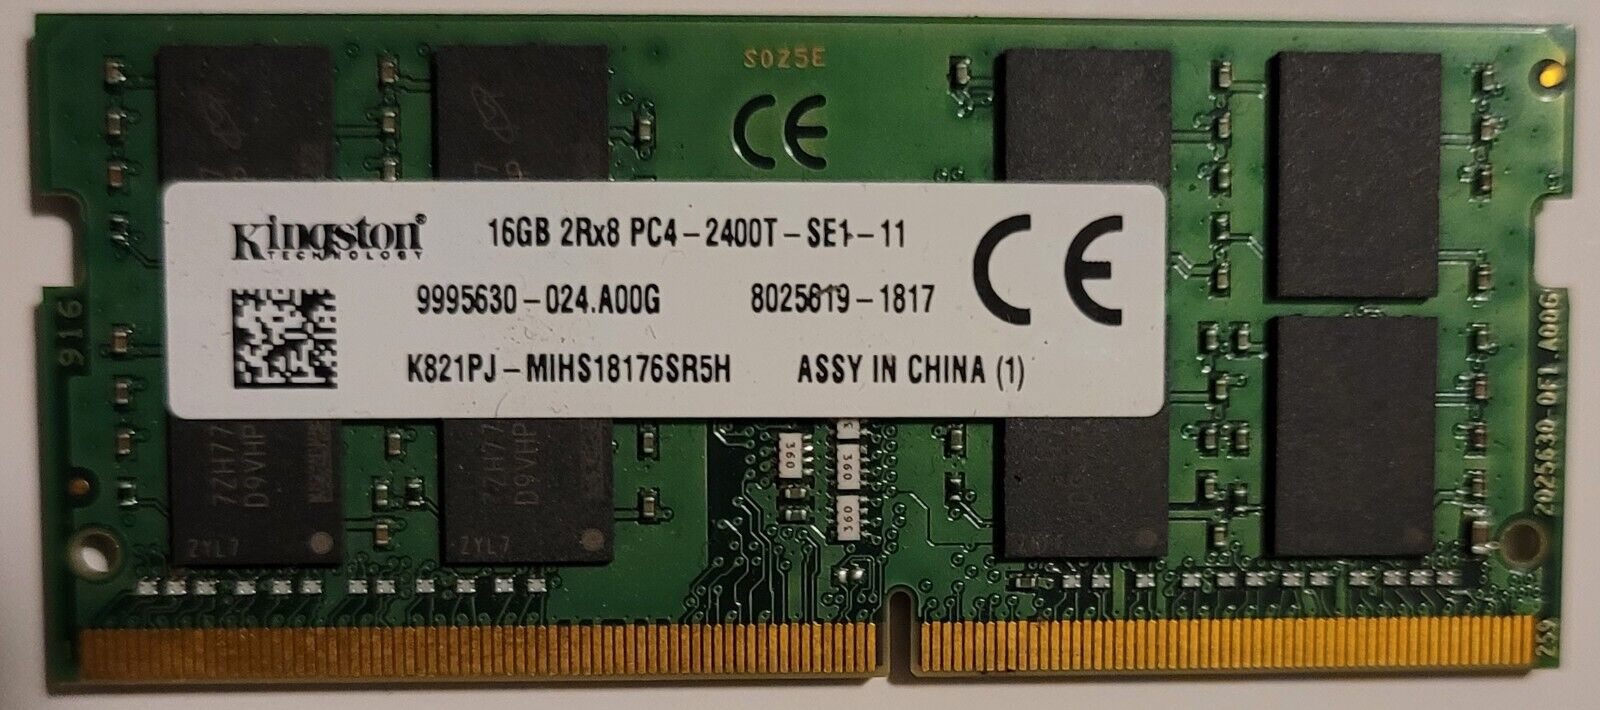 Kingston Laptop Memory 16GB 2Rx8 PC4 2400T K821PJ-MIHS18176SR5H 1817 